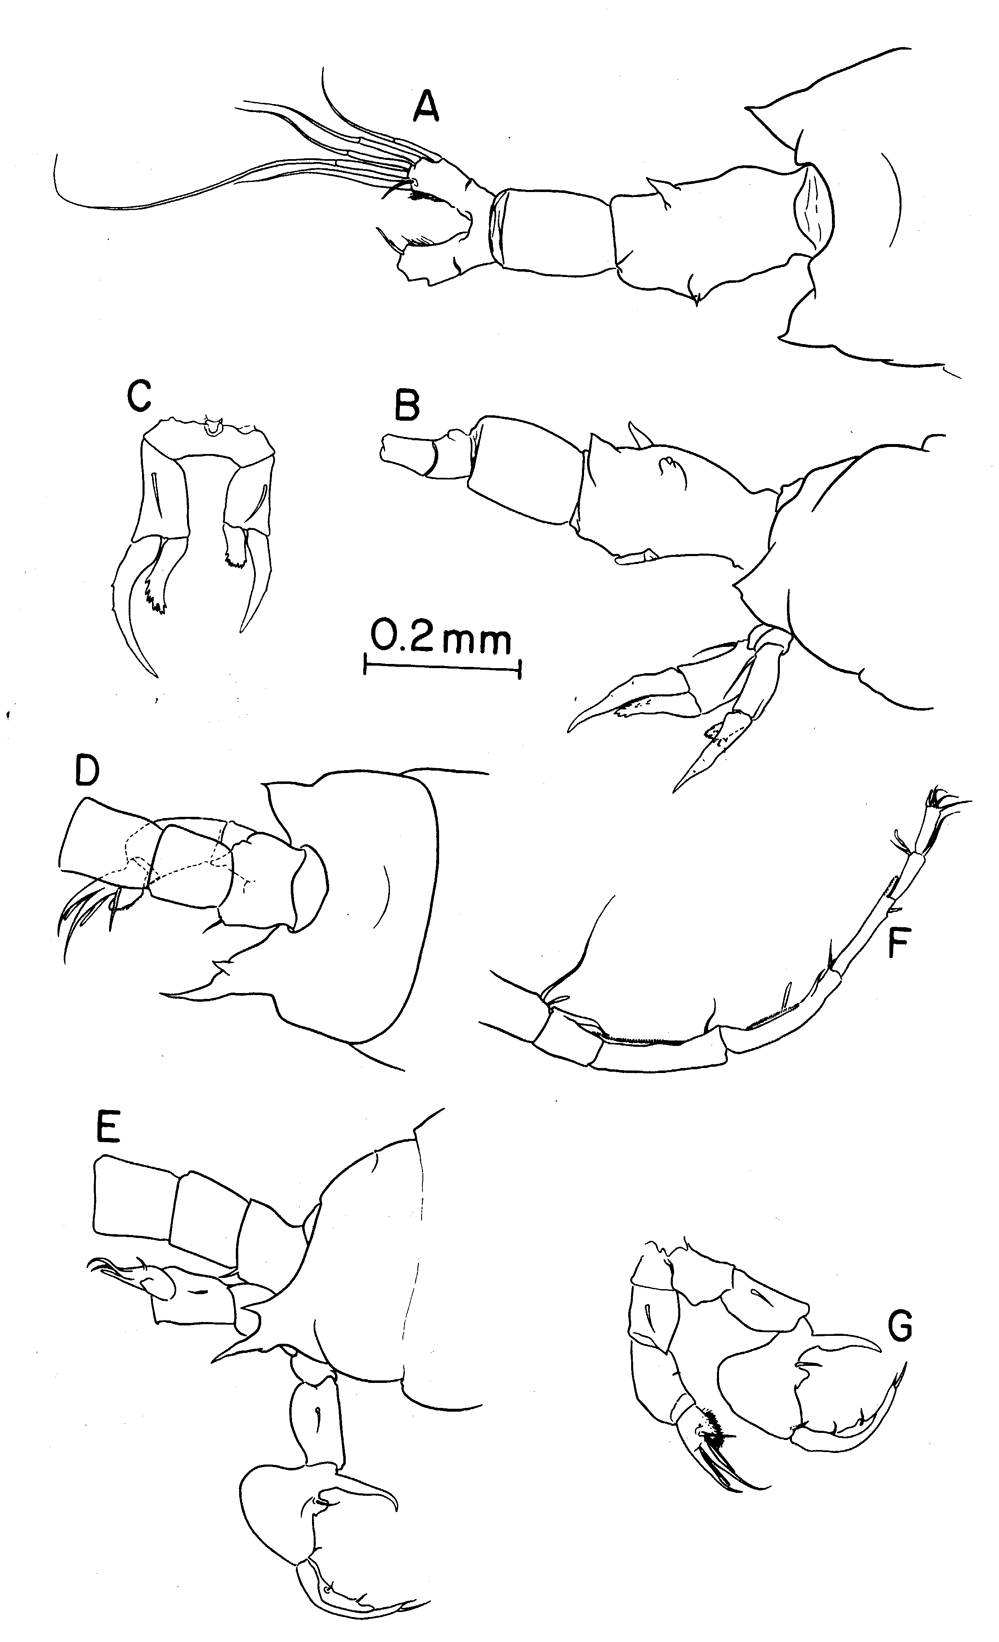 Espce Labidocera papuensis - Planche 1 de figures morphologiques